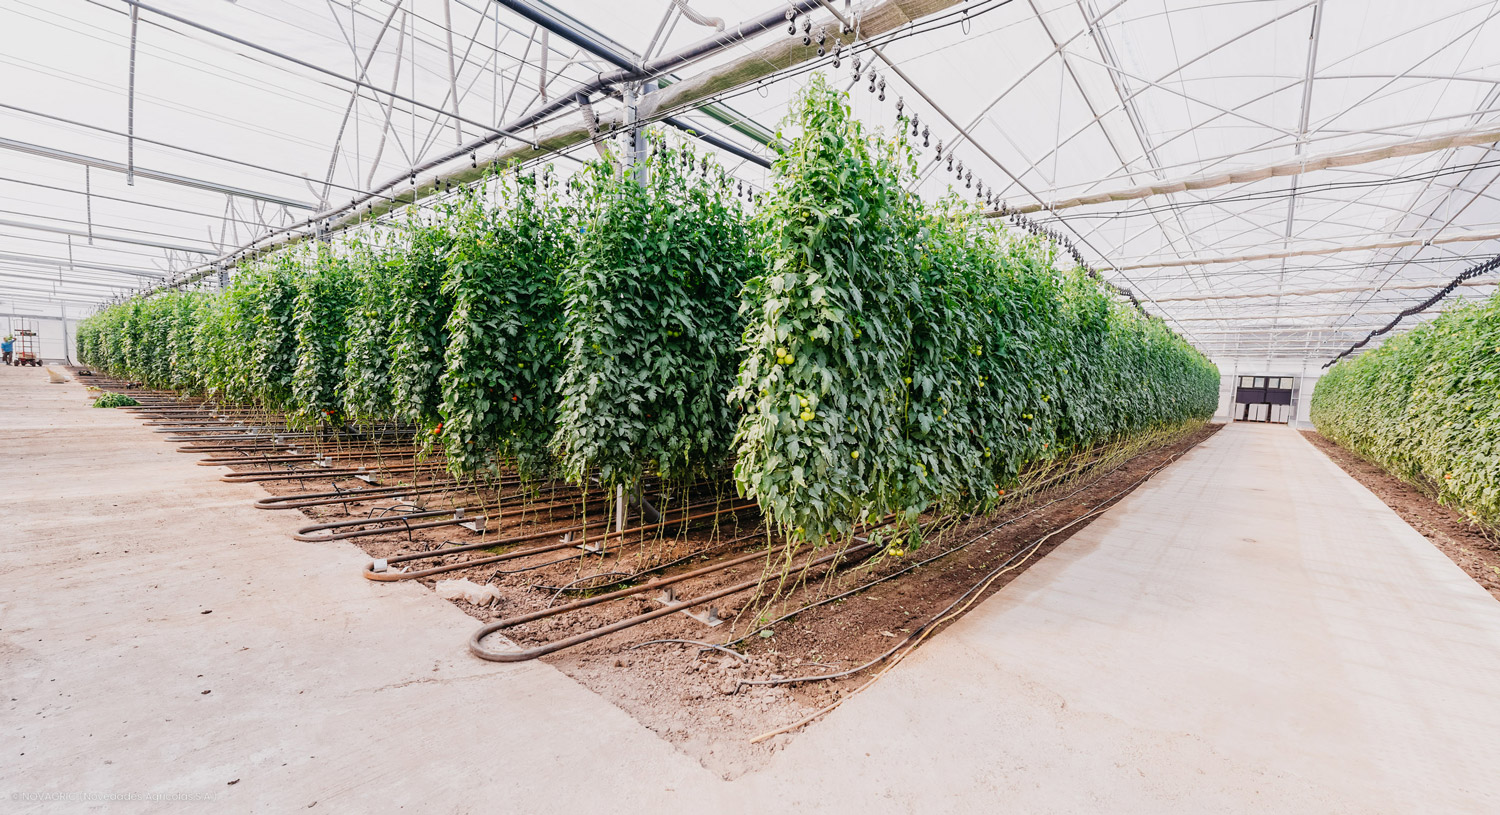 Novagric ejecutó un ambicioso proyecto de invernaderos tecnológicos en Rumanía, equipados para la producción profesional de hortalizas como tomate, brasicas y pimiento.